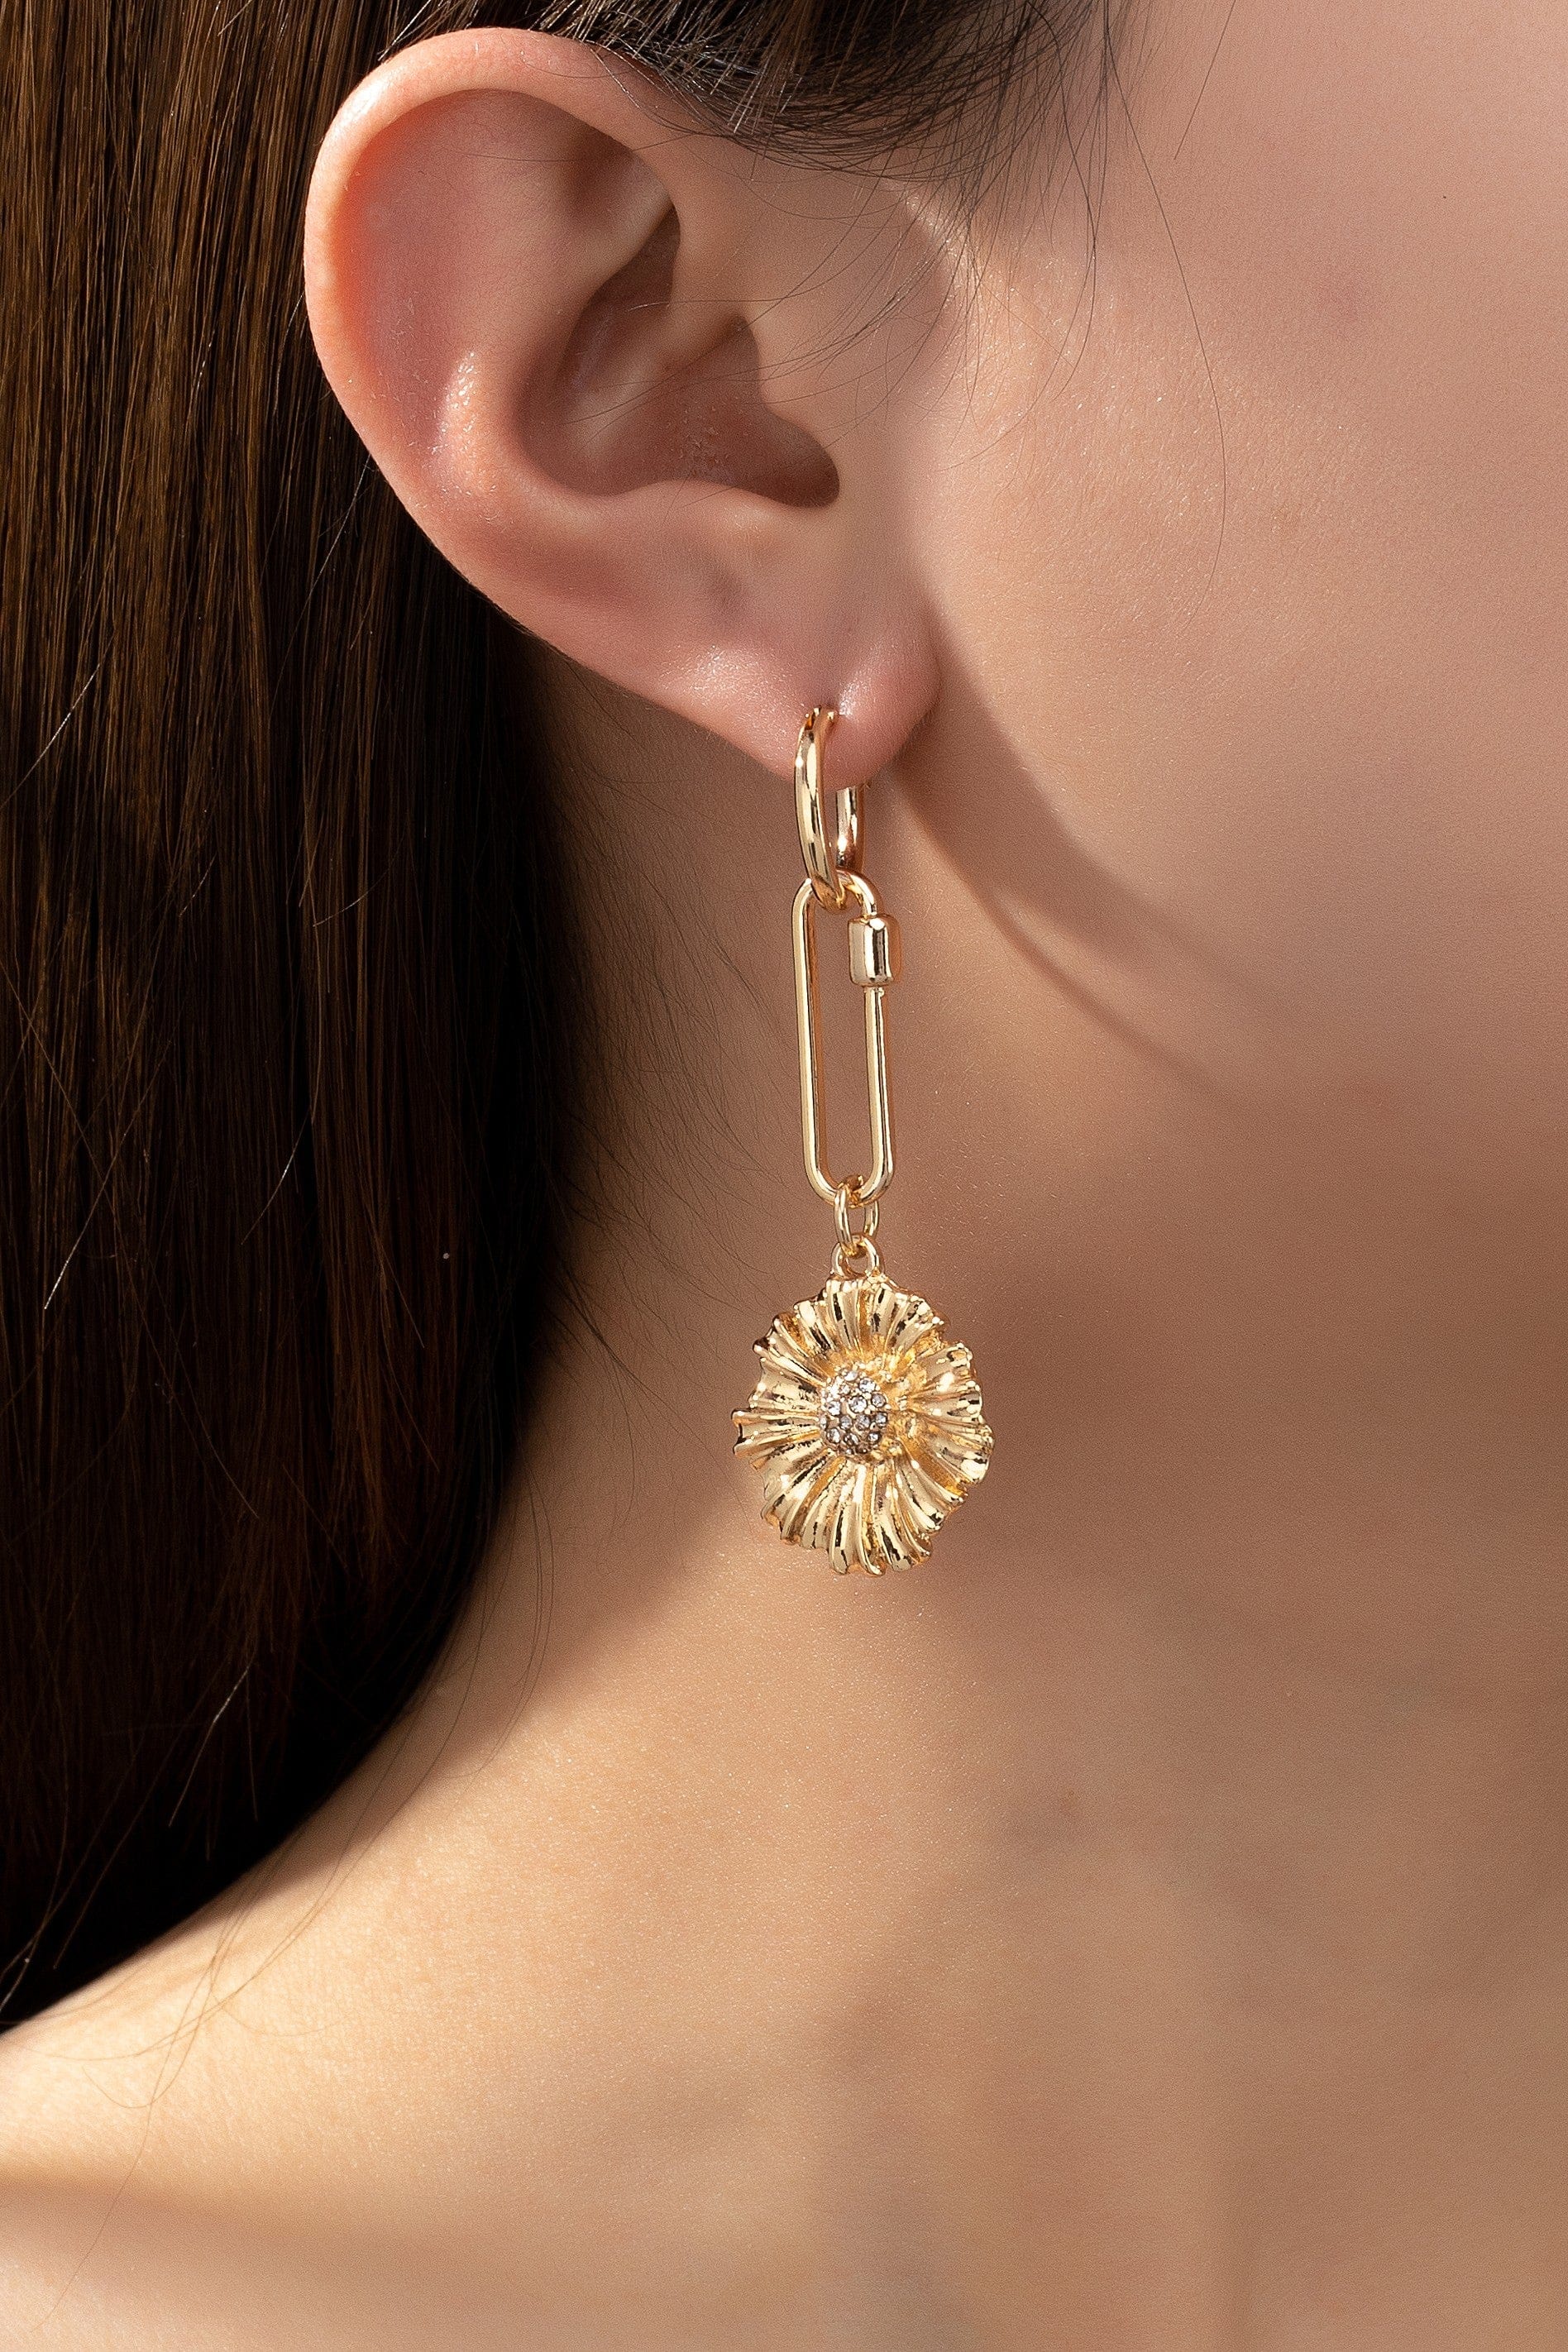 LA3accessories Jewelry - Earrings Oval Link Flower Drop Huggie Earrings In Gold 24575478